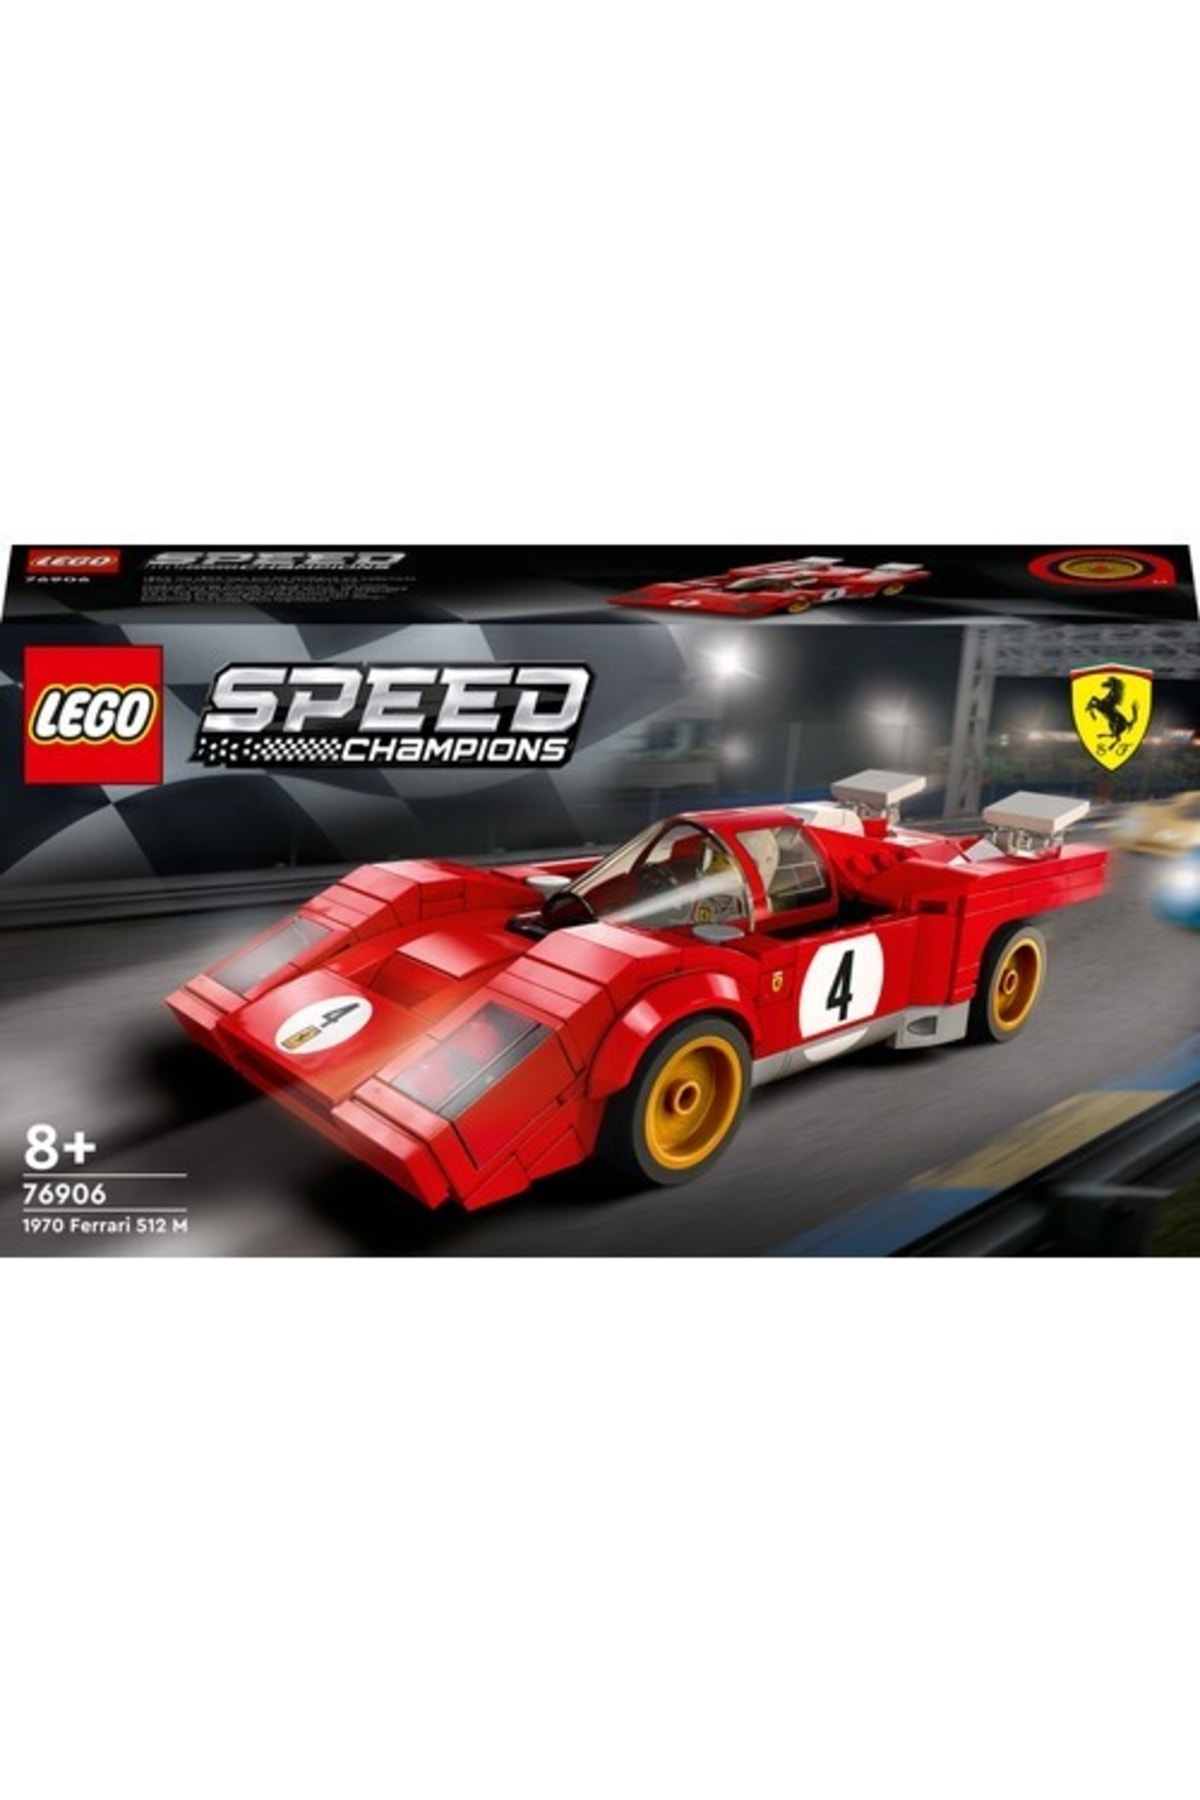 LEGO ® Speed Champions 1970 Ferrari 512 M 76906 - 8 Yaş Ve Üzeri Çocuklar Için Harika Bir Yarış Araba